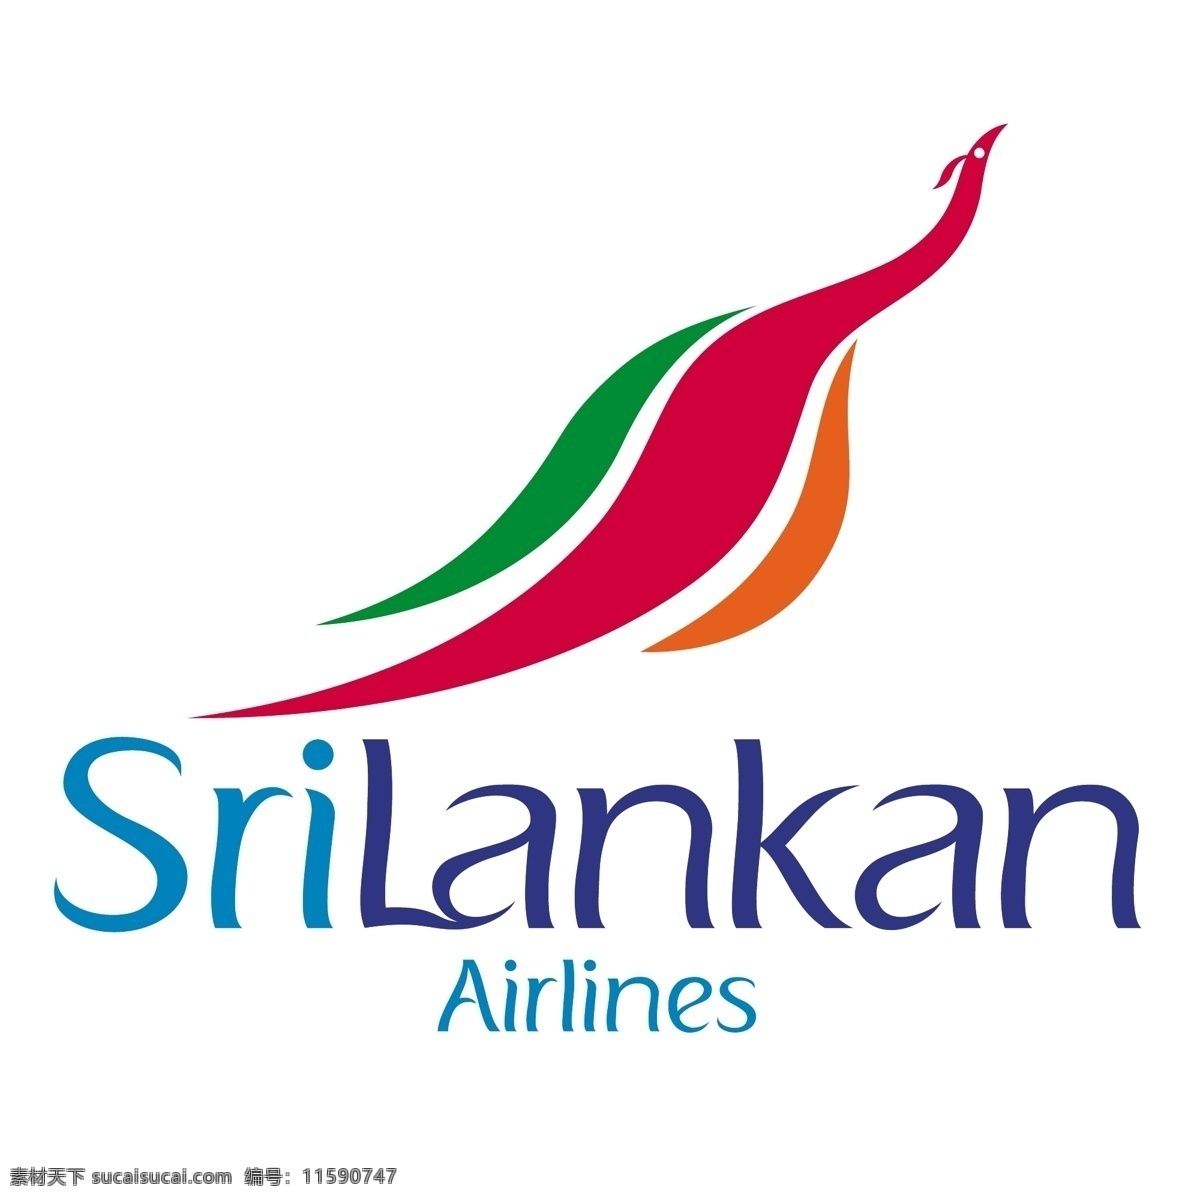 航空公司 斯里兰卡 标志设计 logo 矢量 文件 标识 日历 2012 wi 矢量图 建筑家居